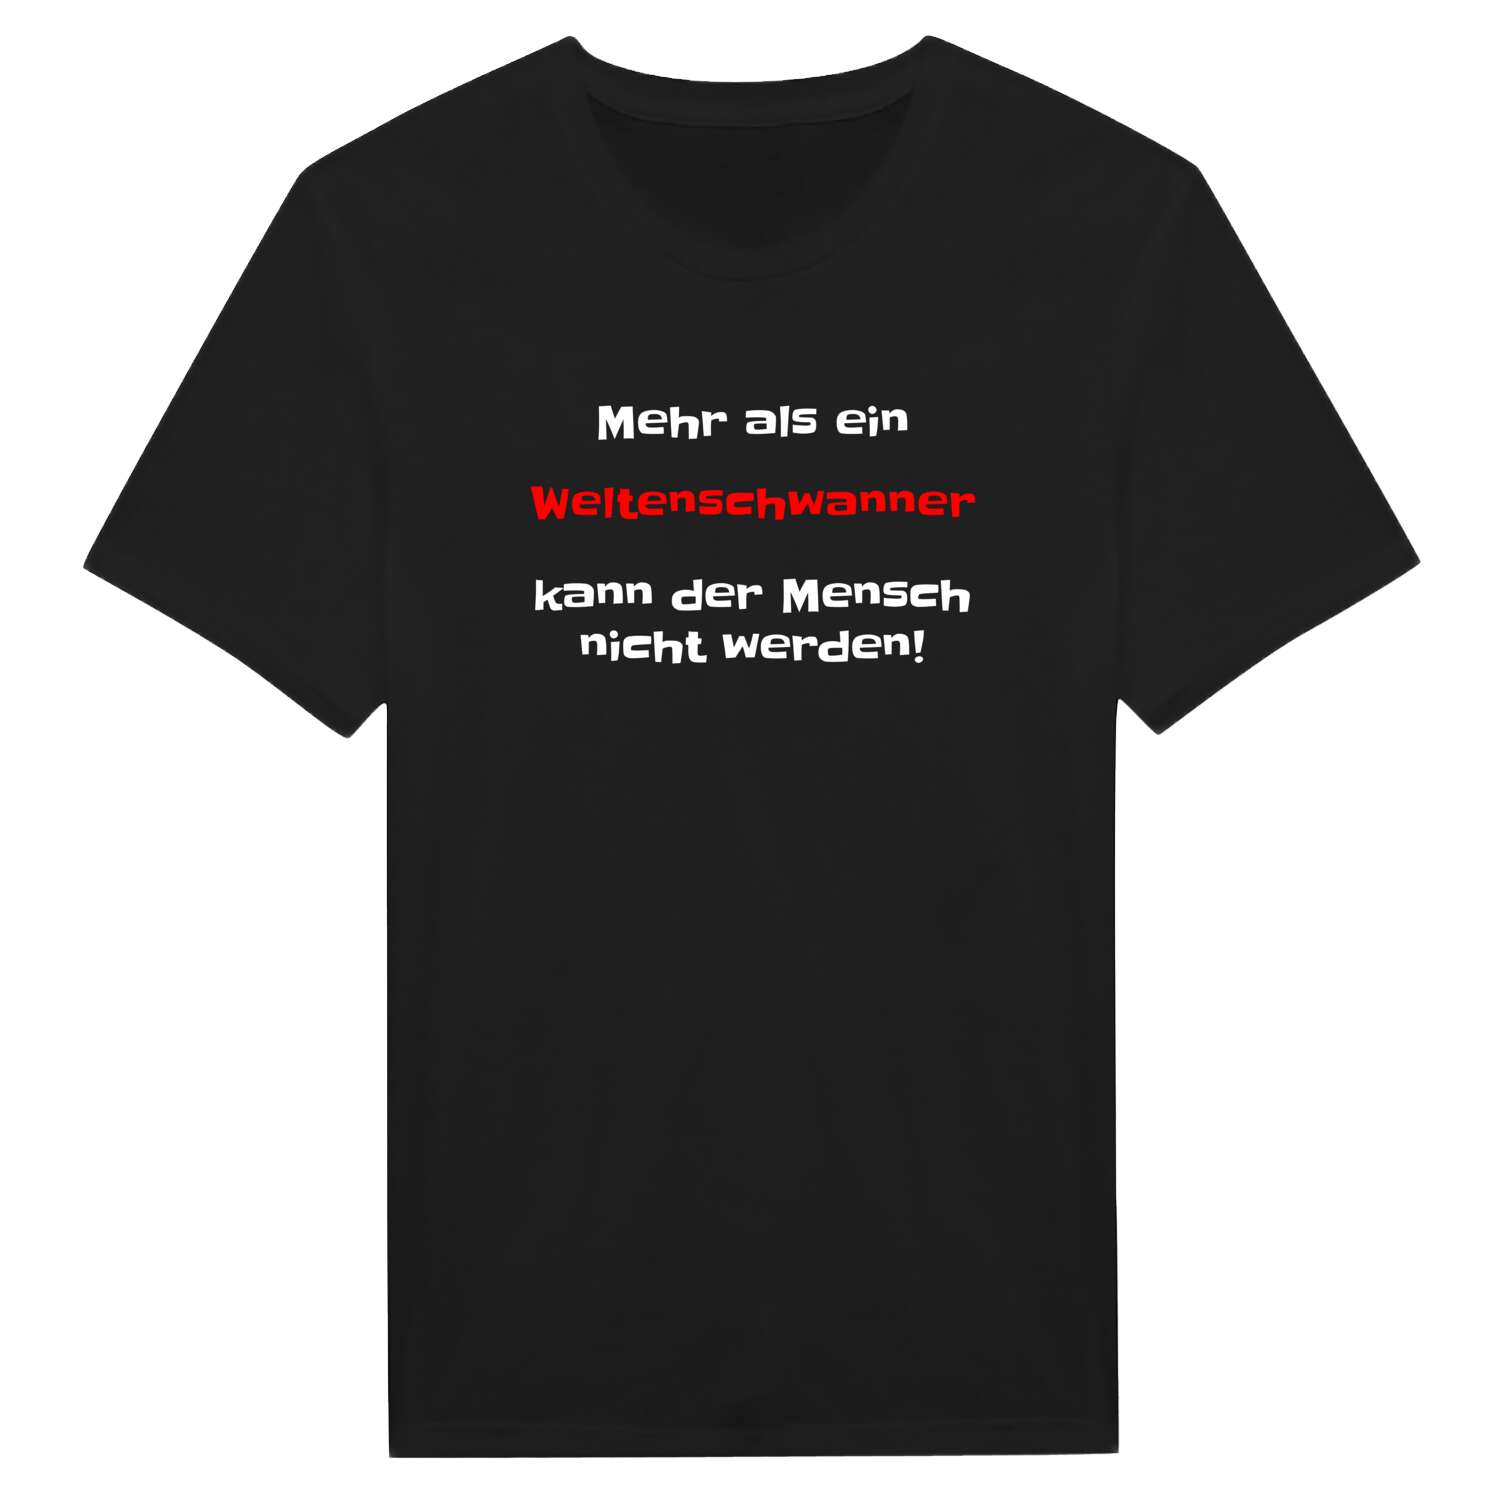 Weltenschwann T-Shirt »Mehr als ein«